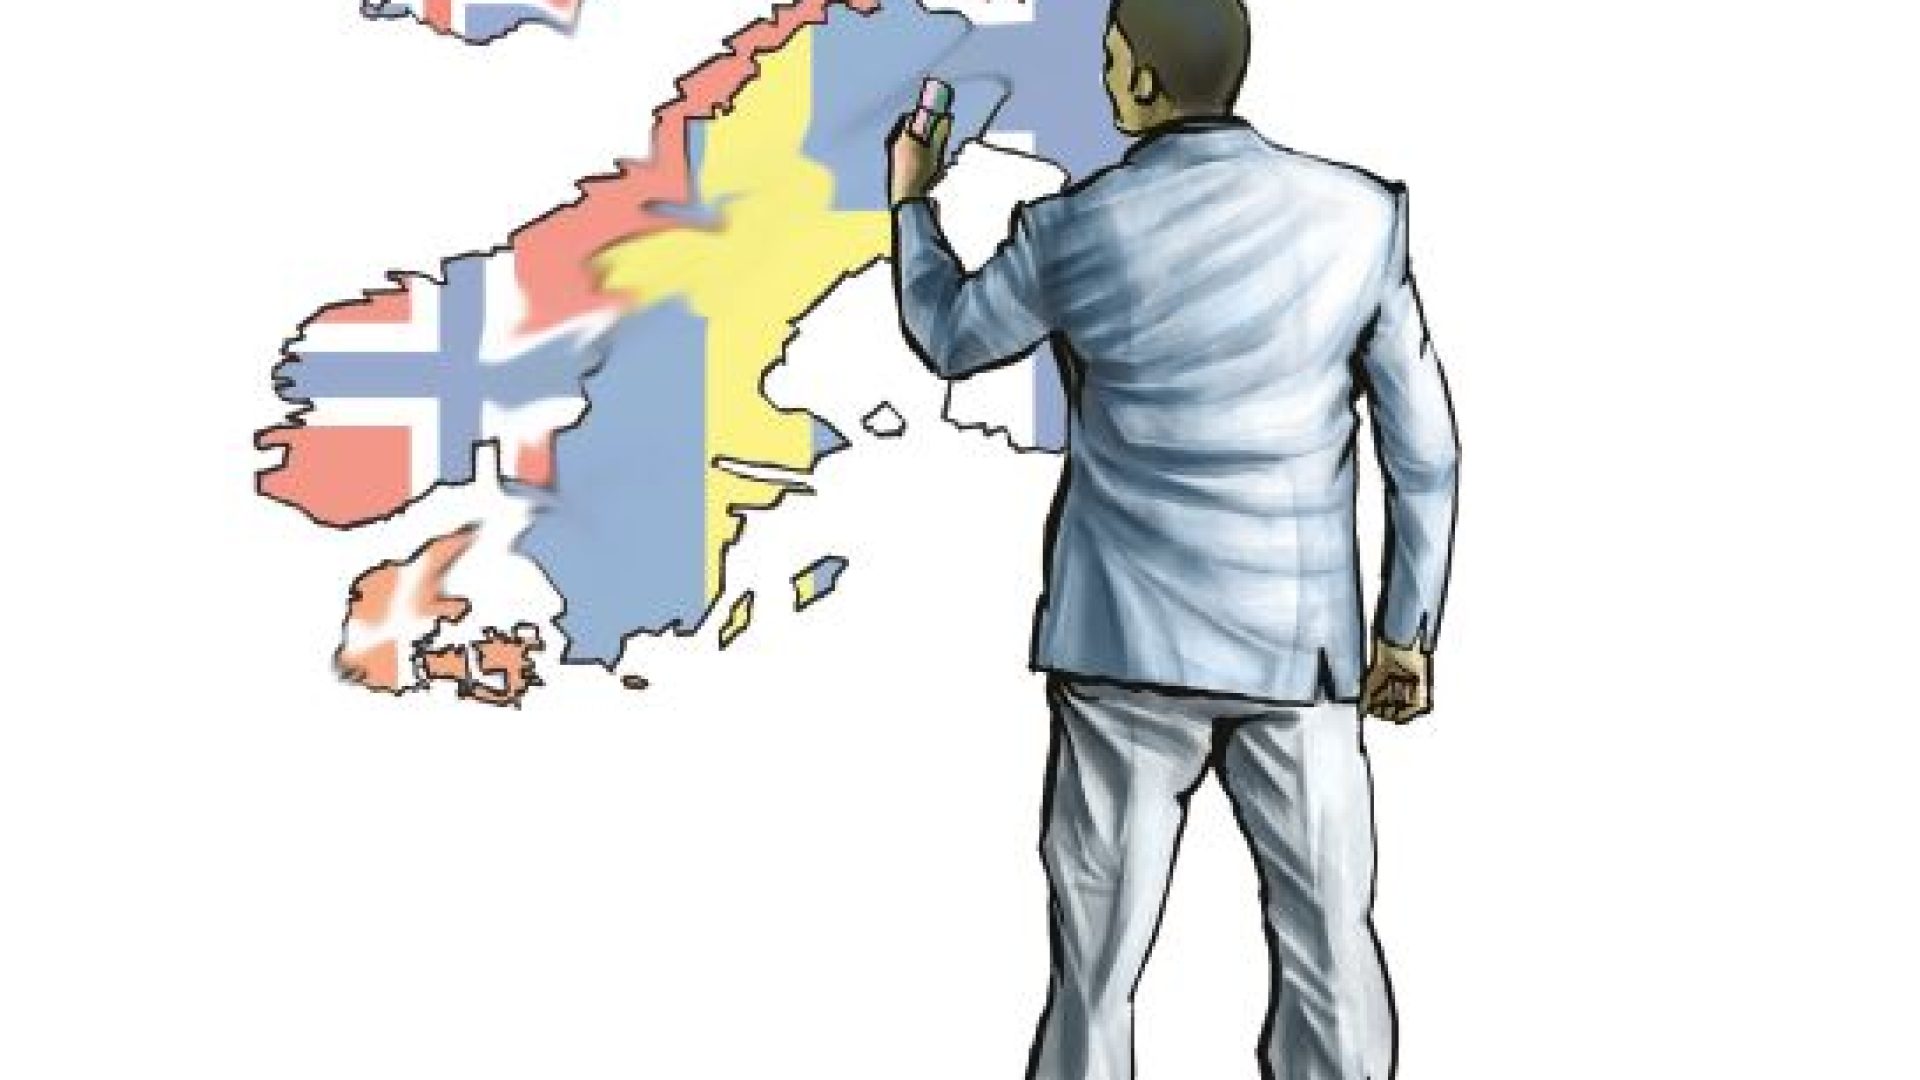 Illustration över de nordiska länderna